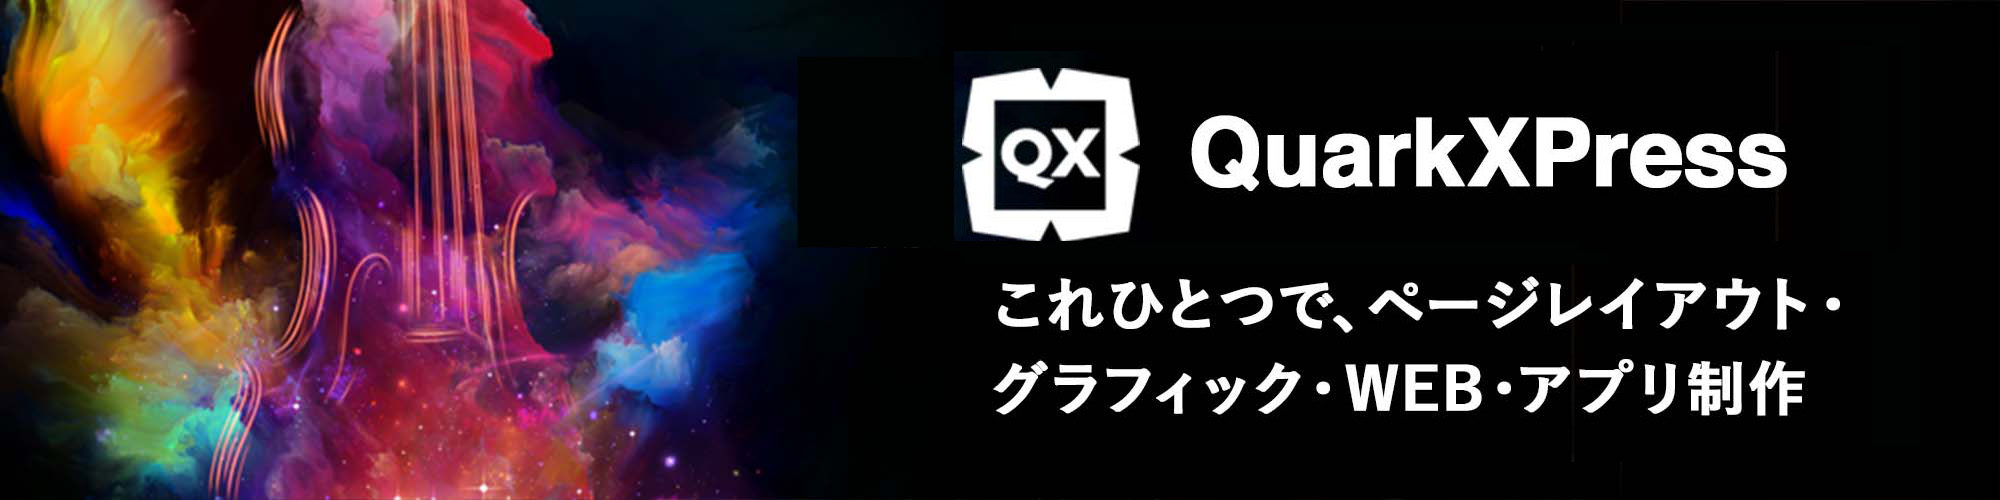 Quark XPress – 印刷物から電子書籍まであらゆるレイアウトに対応したデザインレイアウトソフト